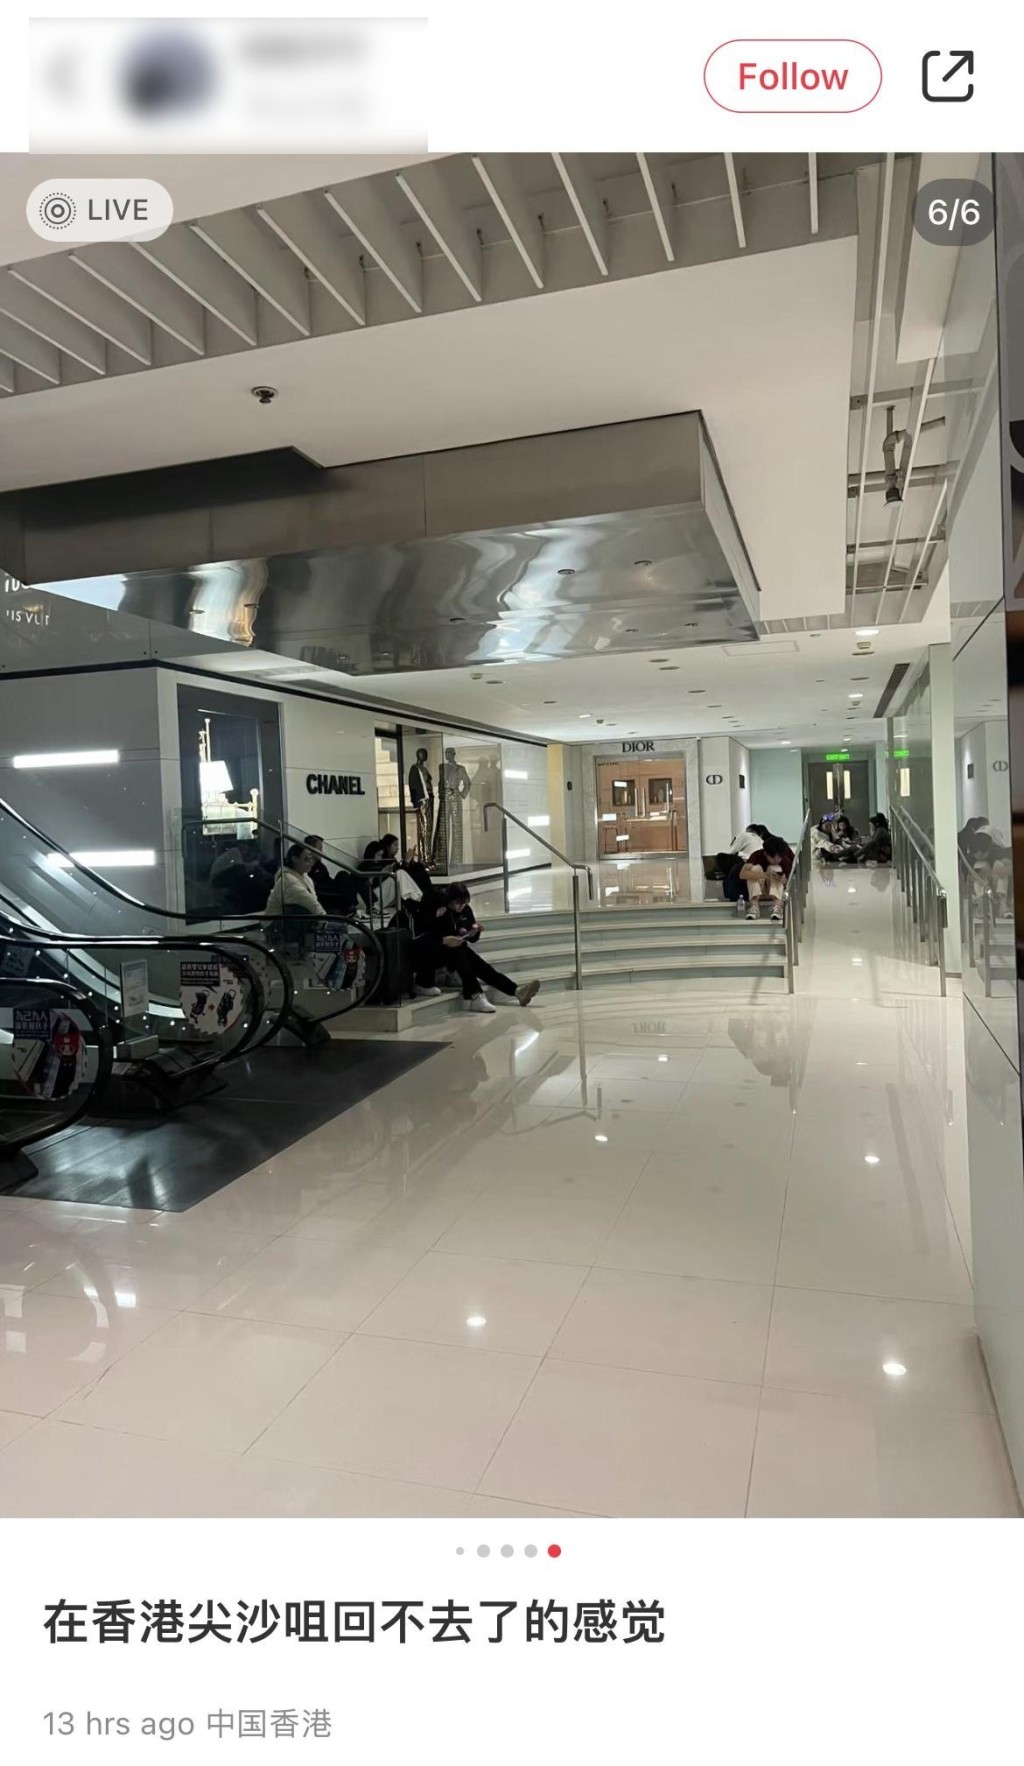 有旅客在海港城商場靠著墻坐在地板上，名店CHANEL門外亦出現滯留旅客的身影。小紅書圖片